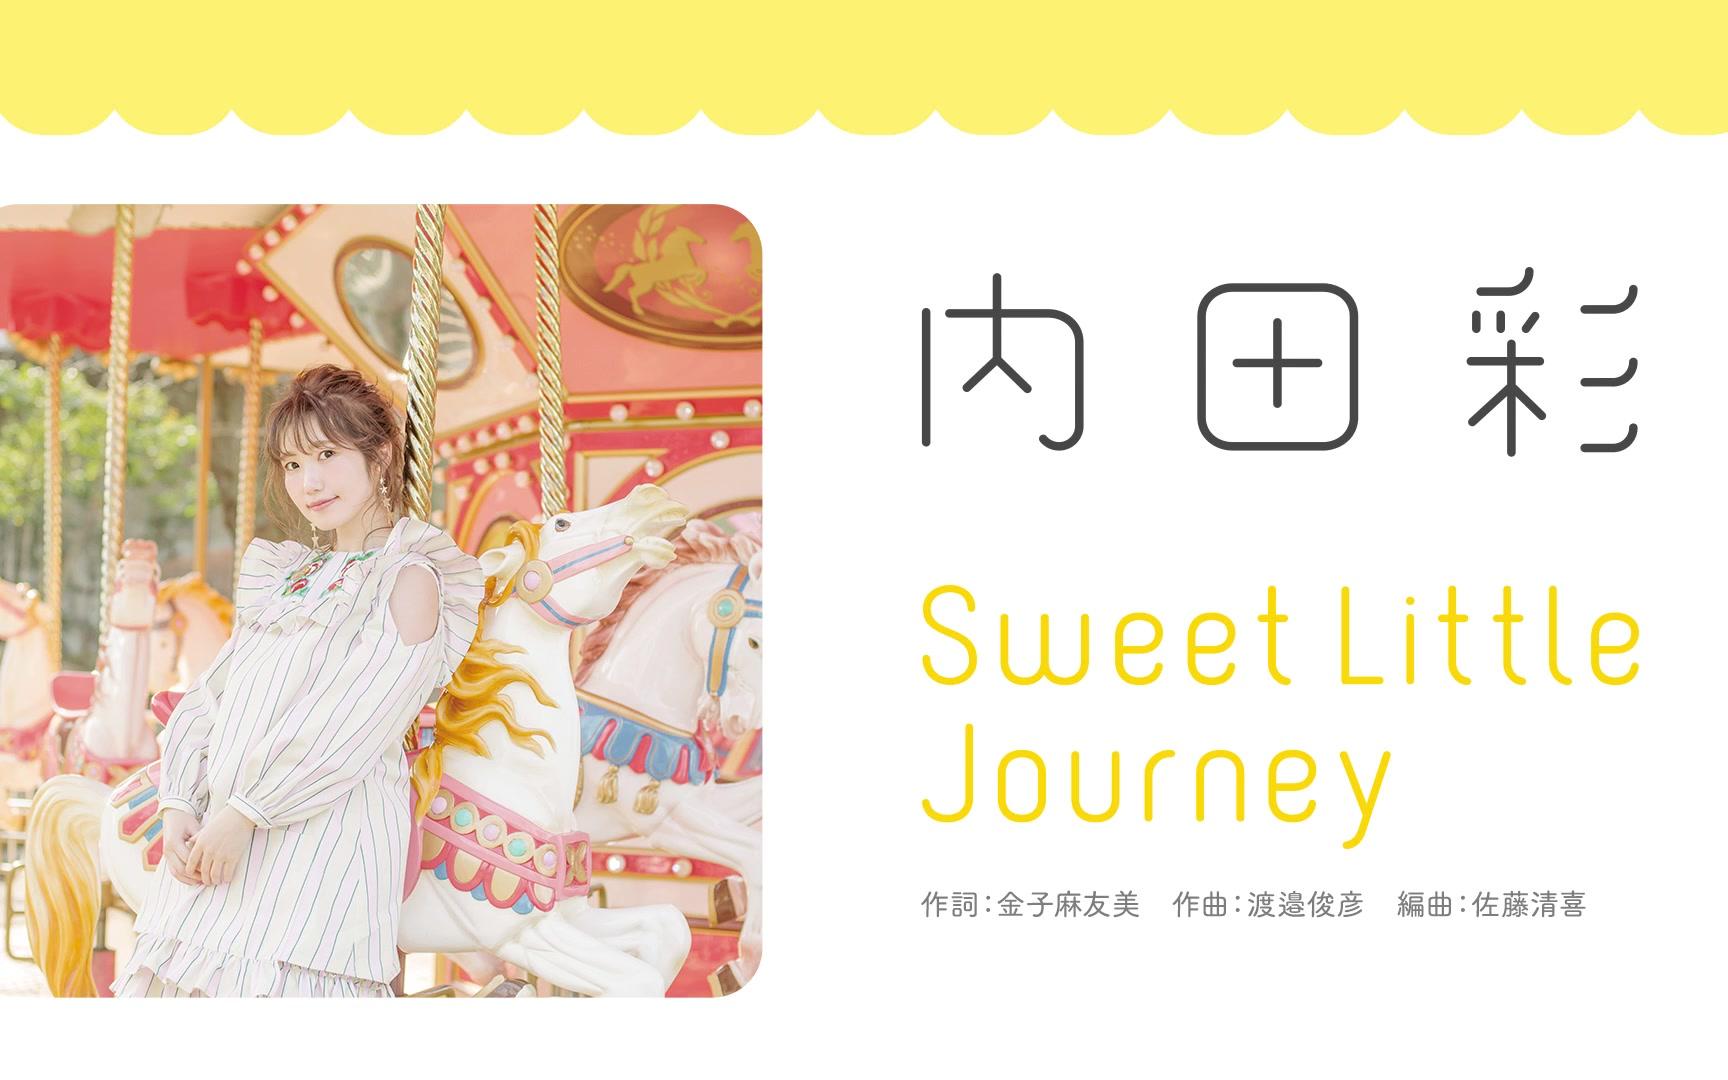 内田彩2nd Single So Happy Cw曲 Sweet Little Journey 试听视频 哔哩哔哩 つロ干杯 Bilibili